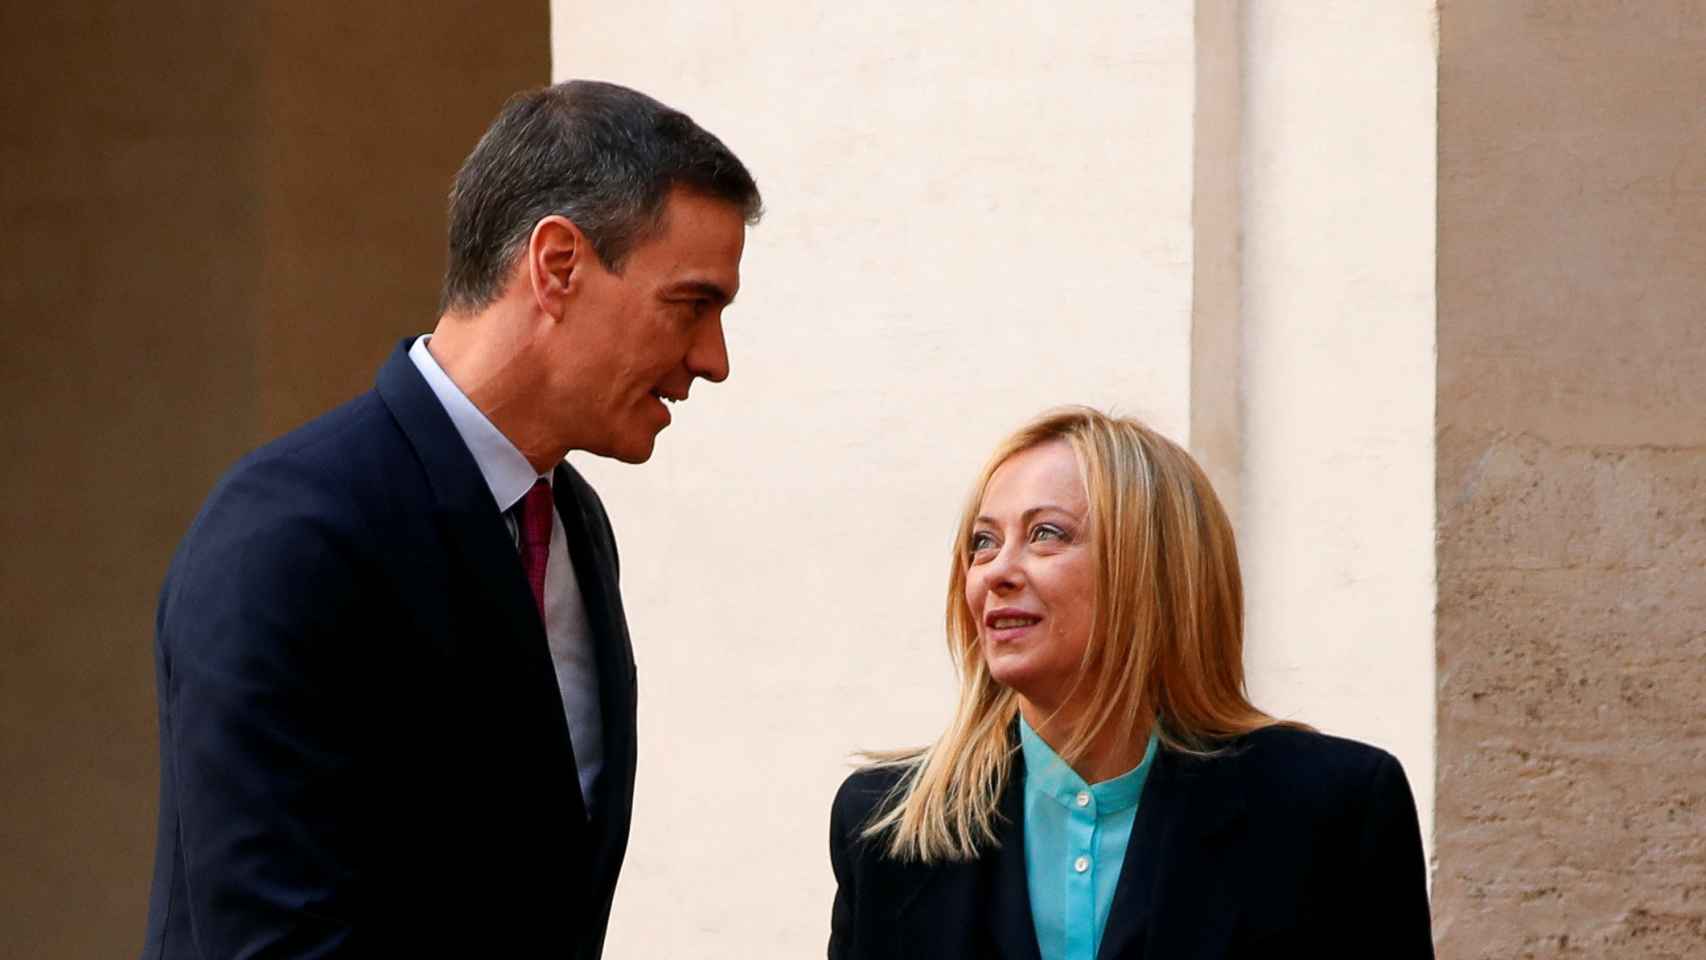 Pedro Sánchez, presidente del Gobierno, recibido por Giorgia Meloni, primera ministra de Italia, en el Palacio Chigi de Roma.